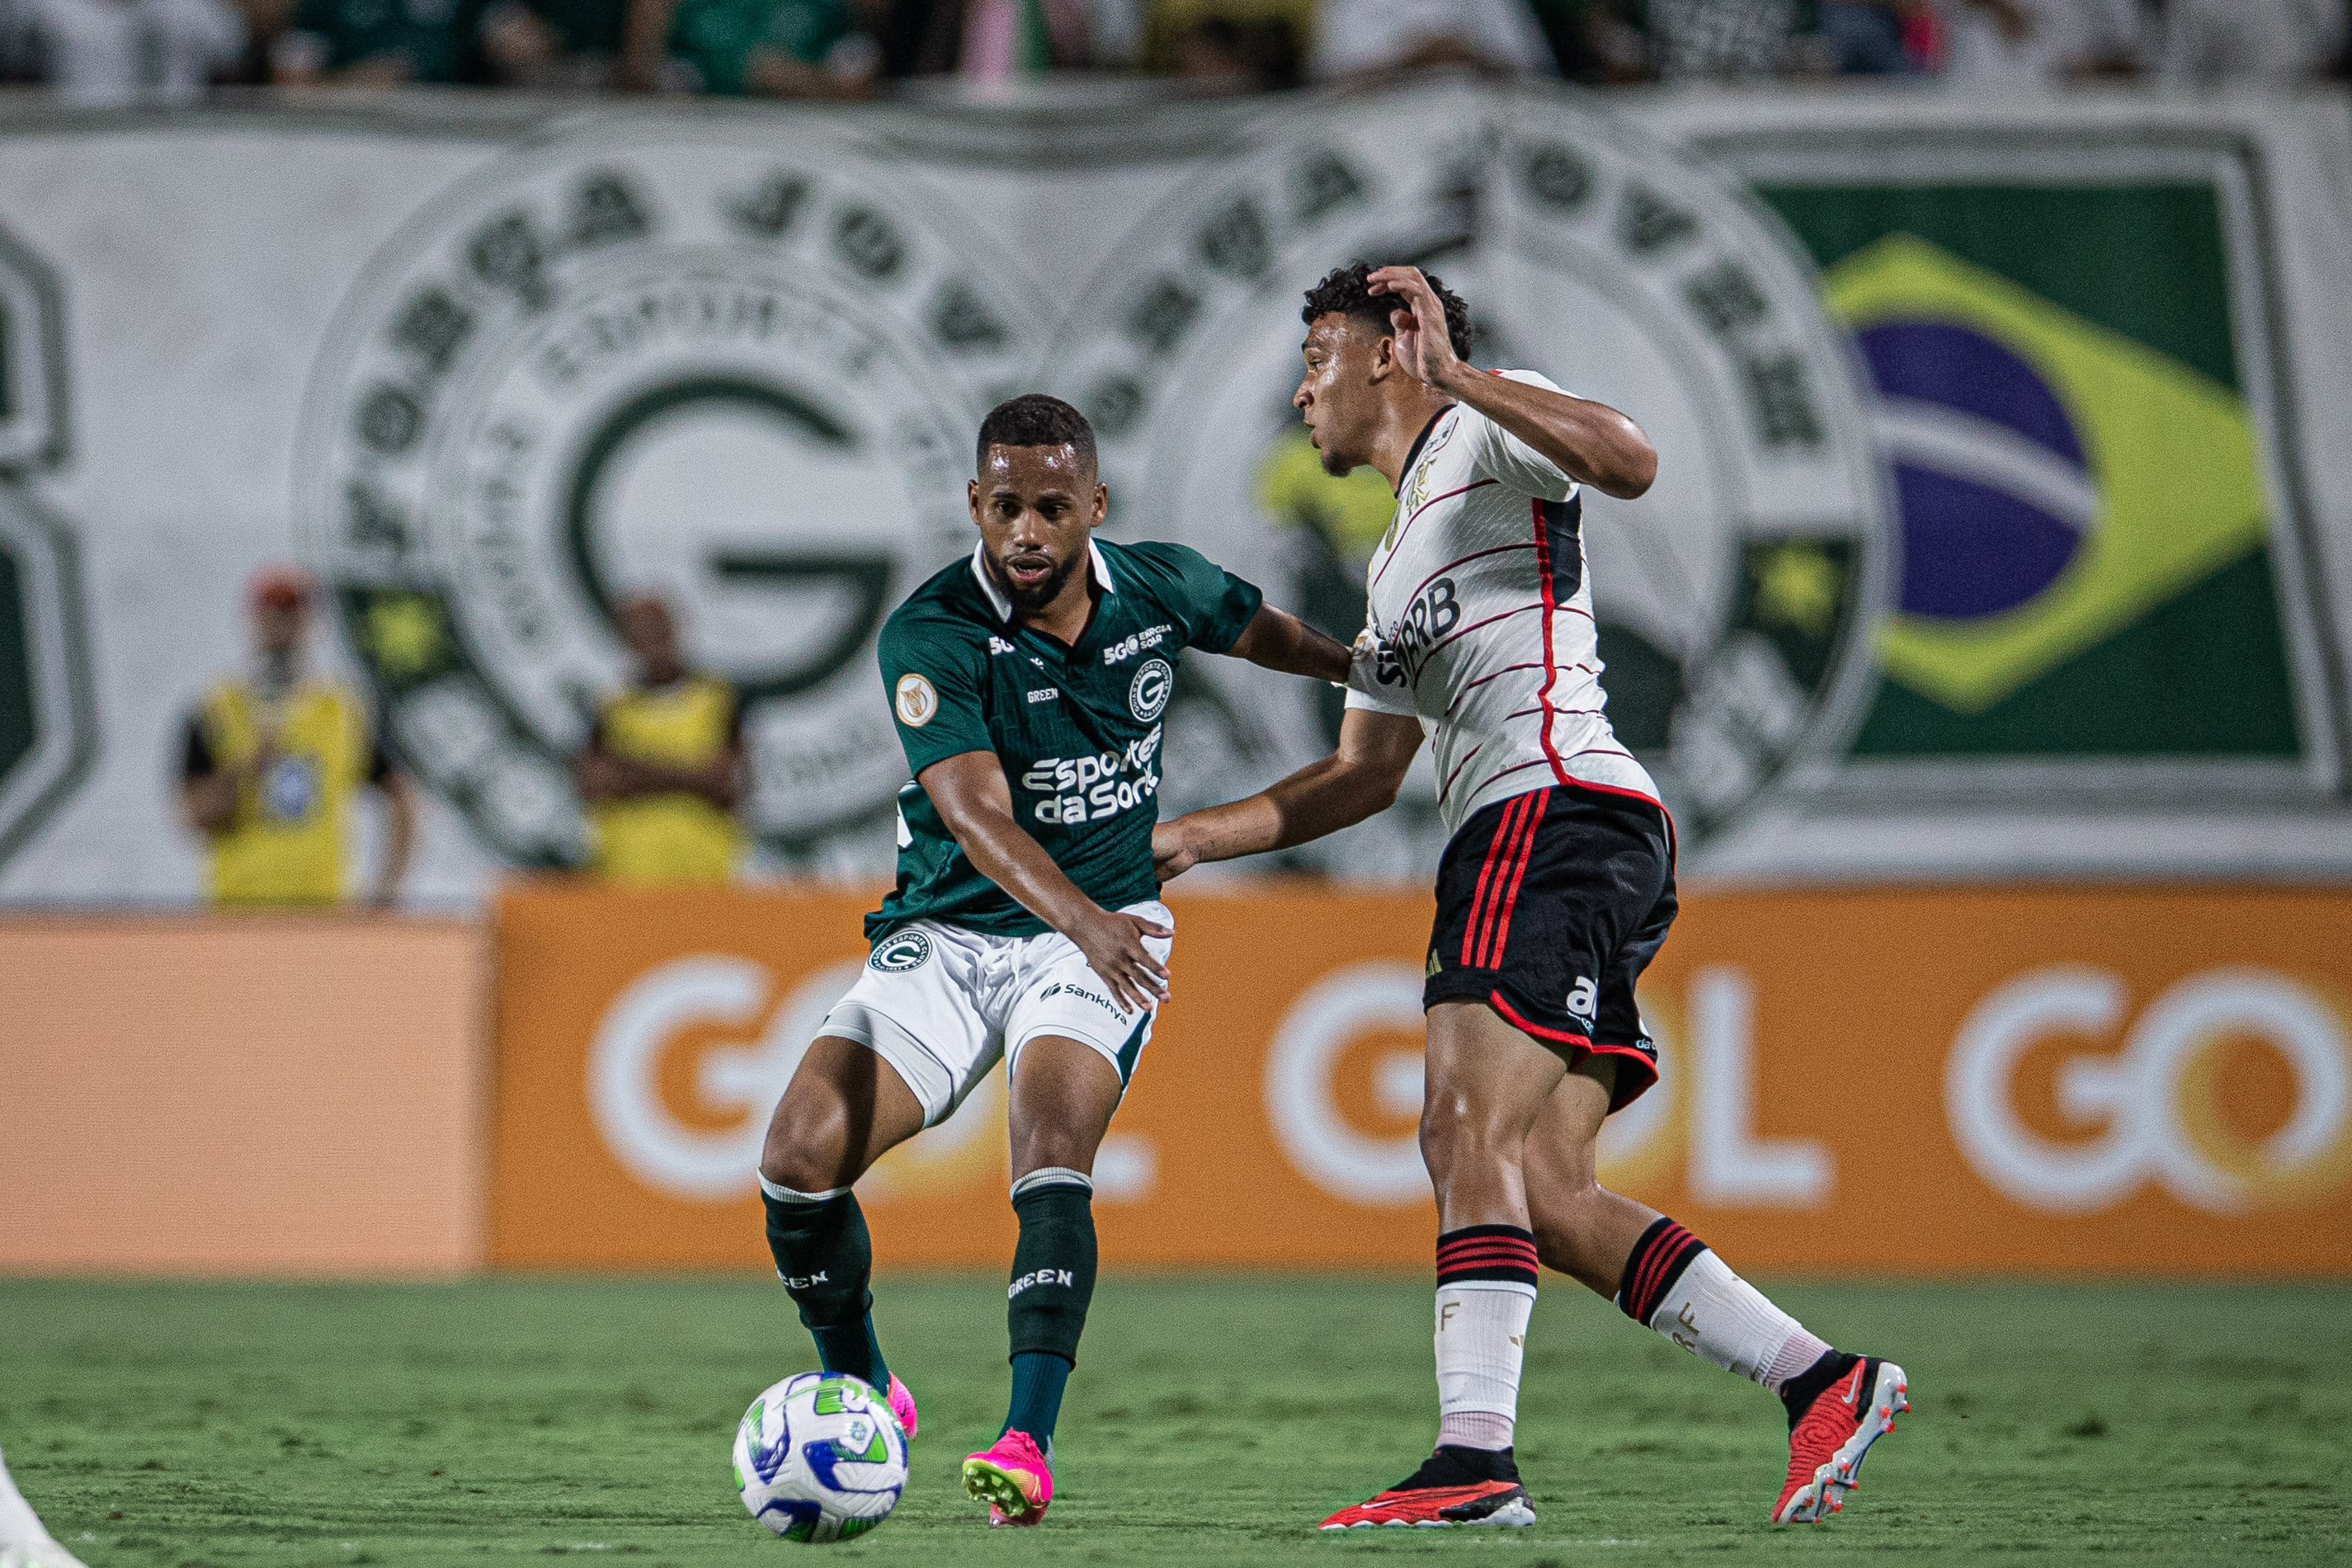 Goiás e Flamengo empatam em jogo morno sem gols no Brasileirão - GP1